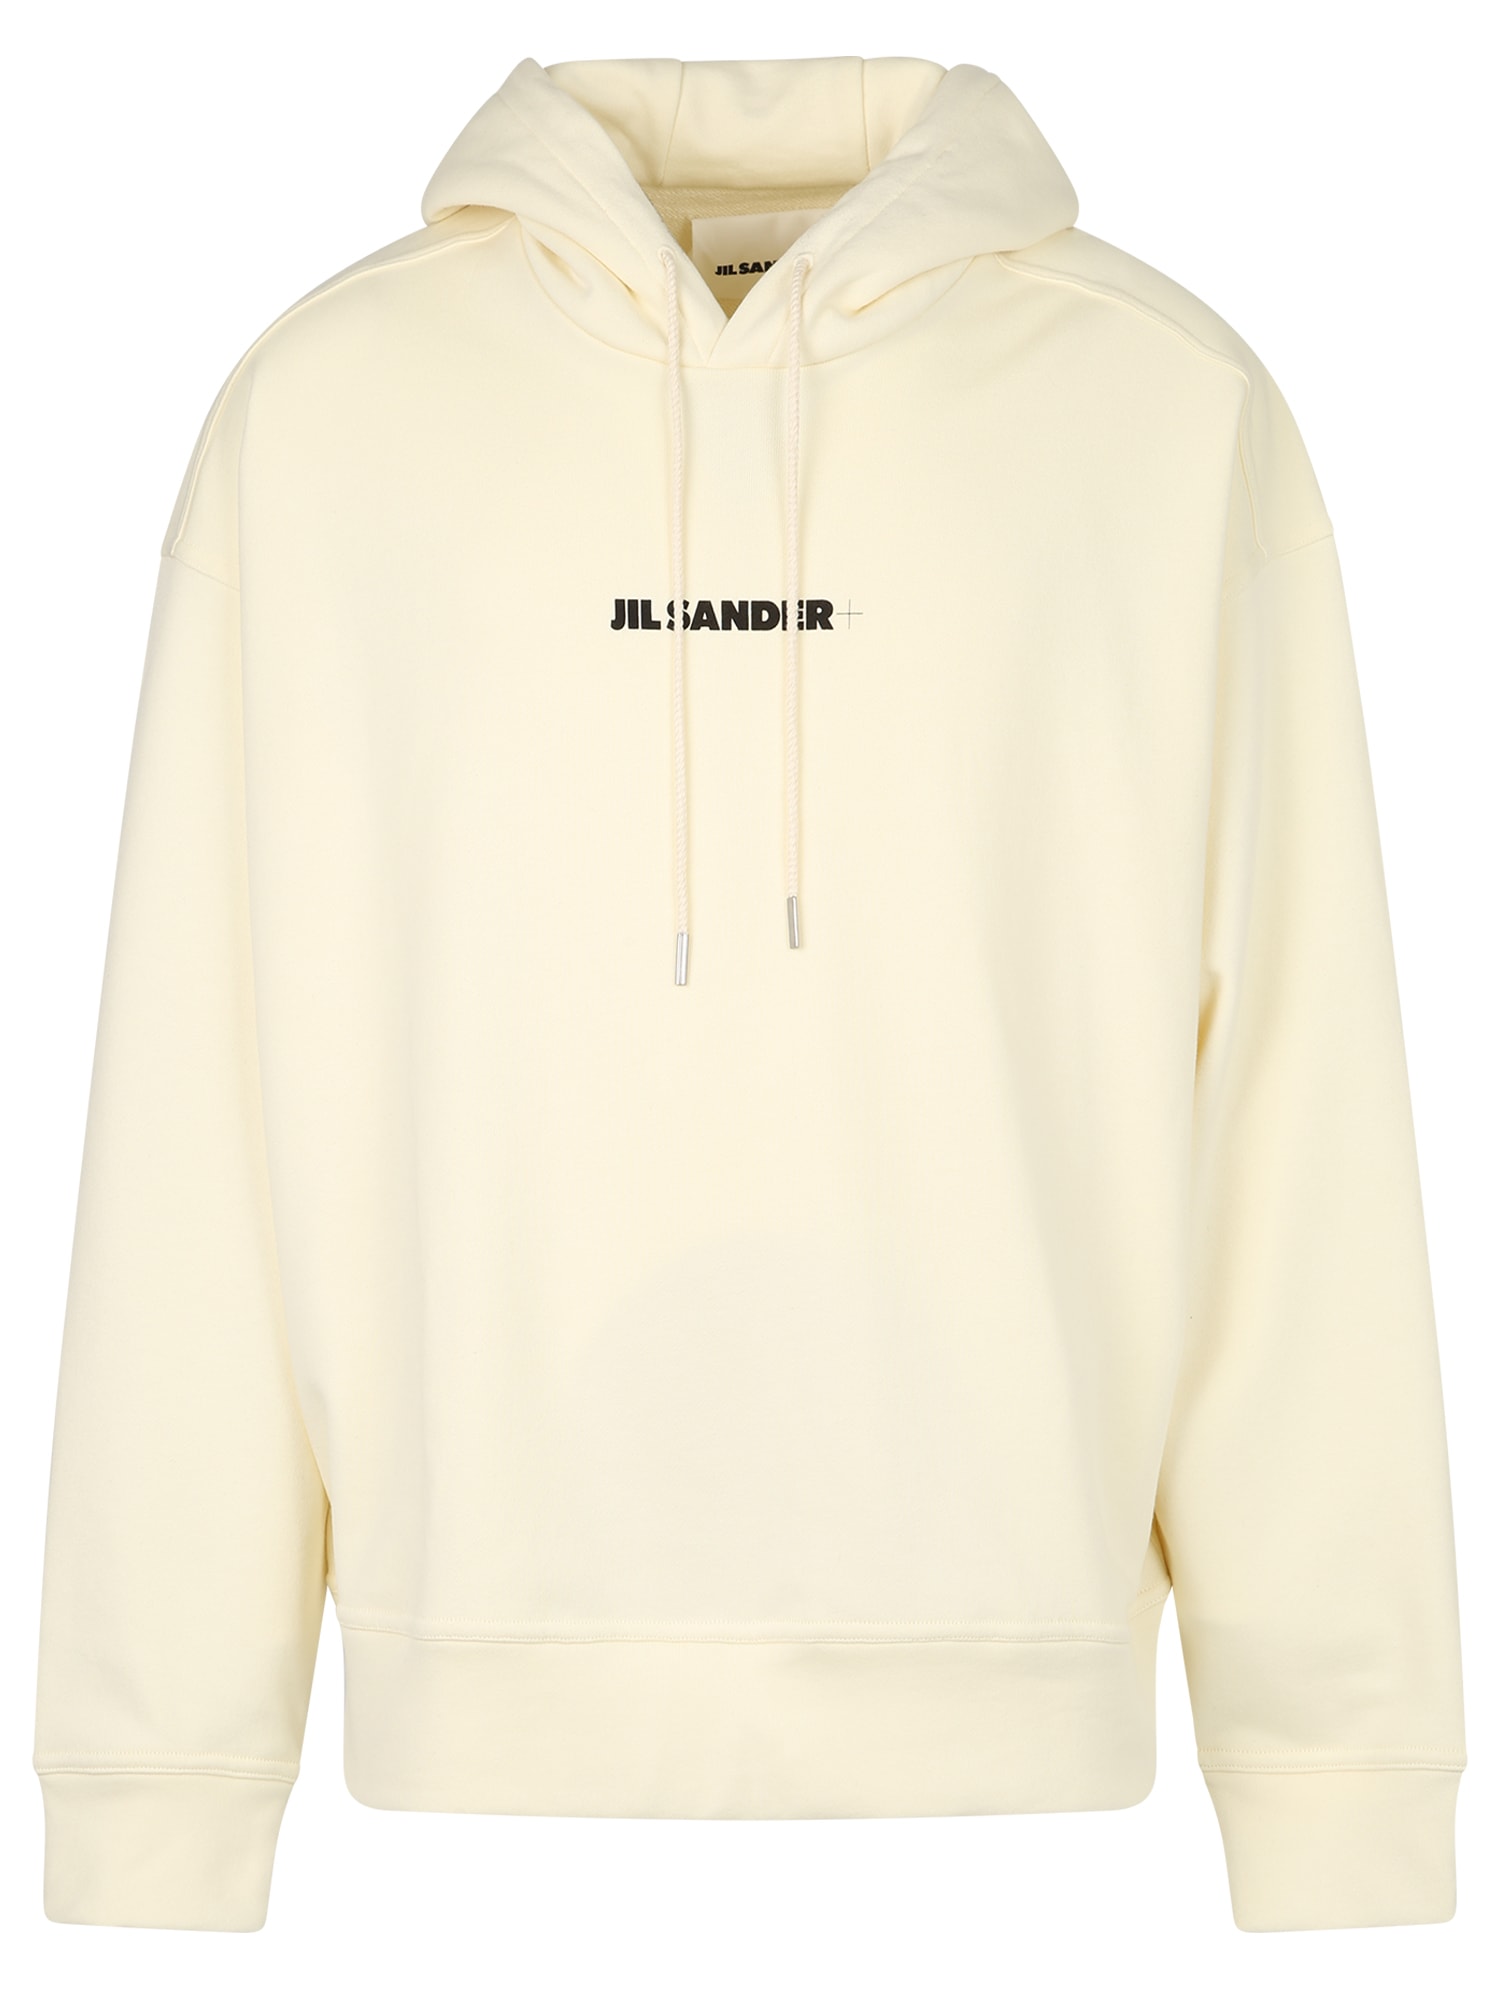 Jil Sander Branded Sweatshirt